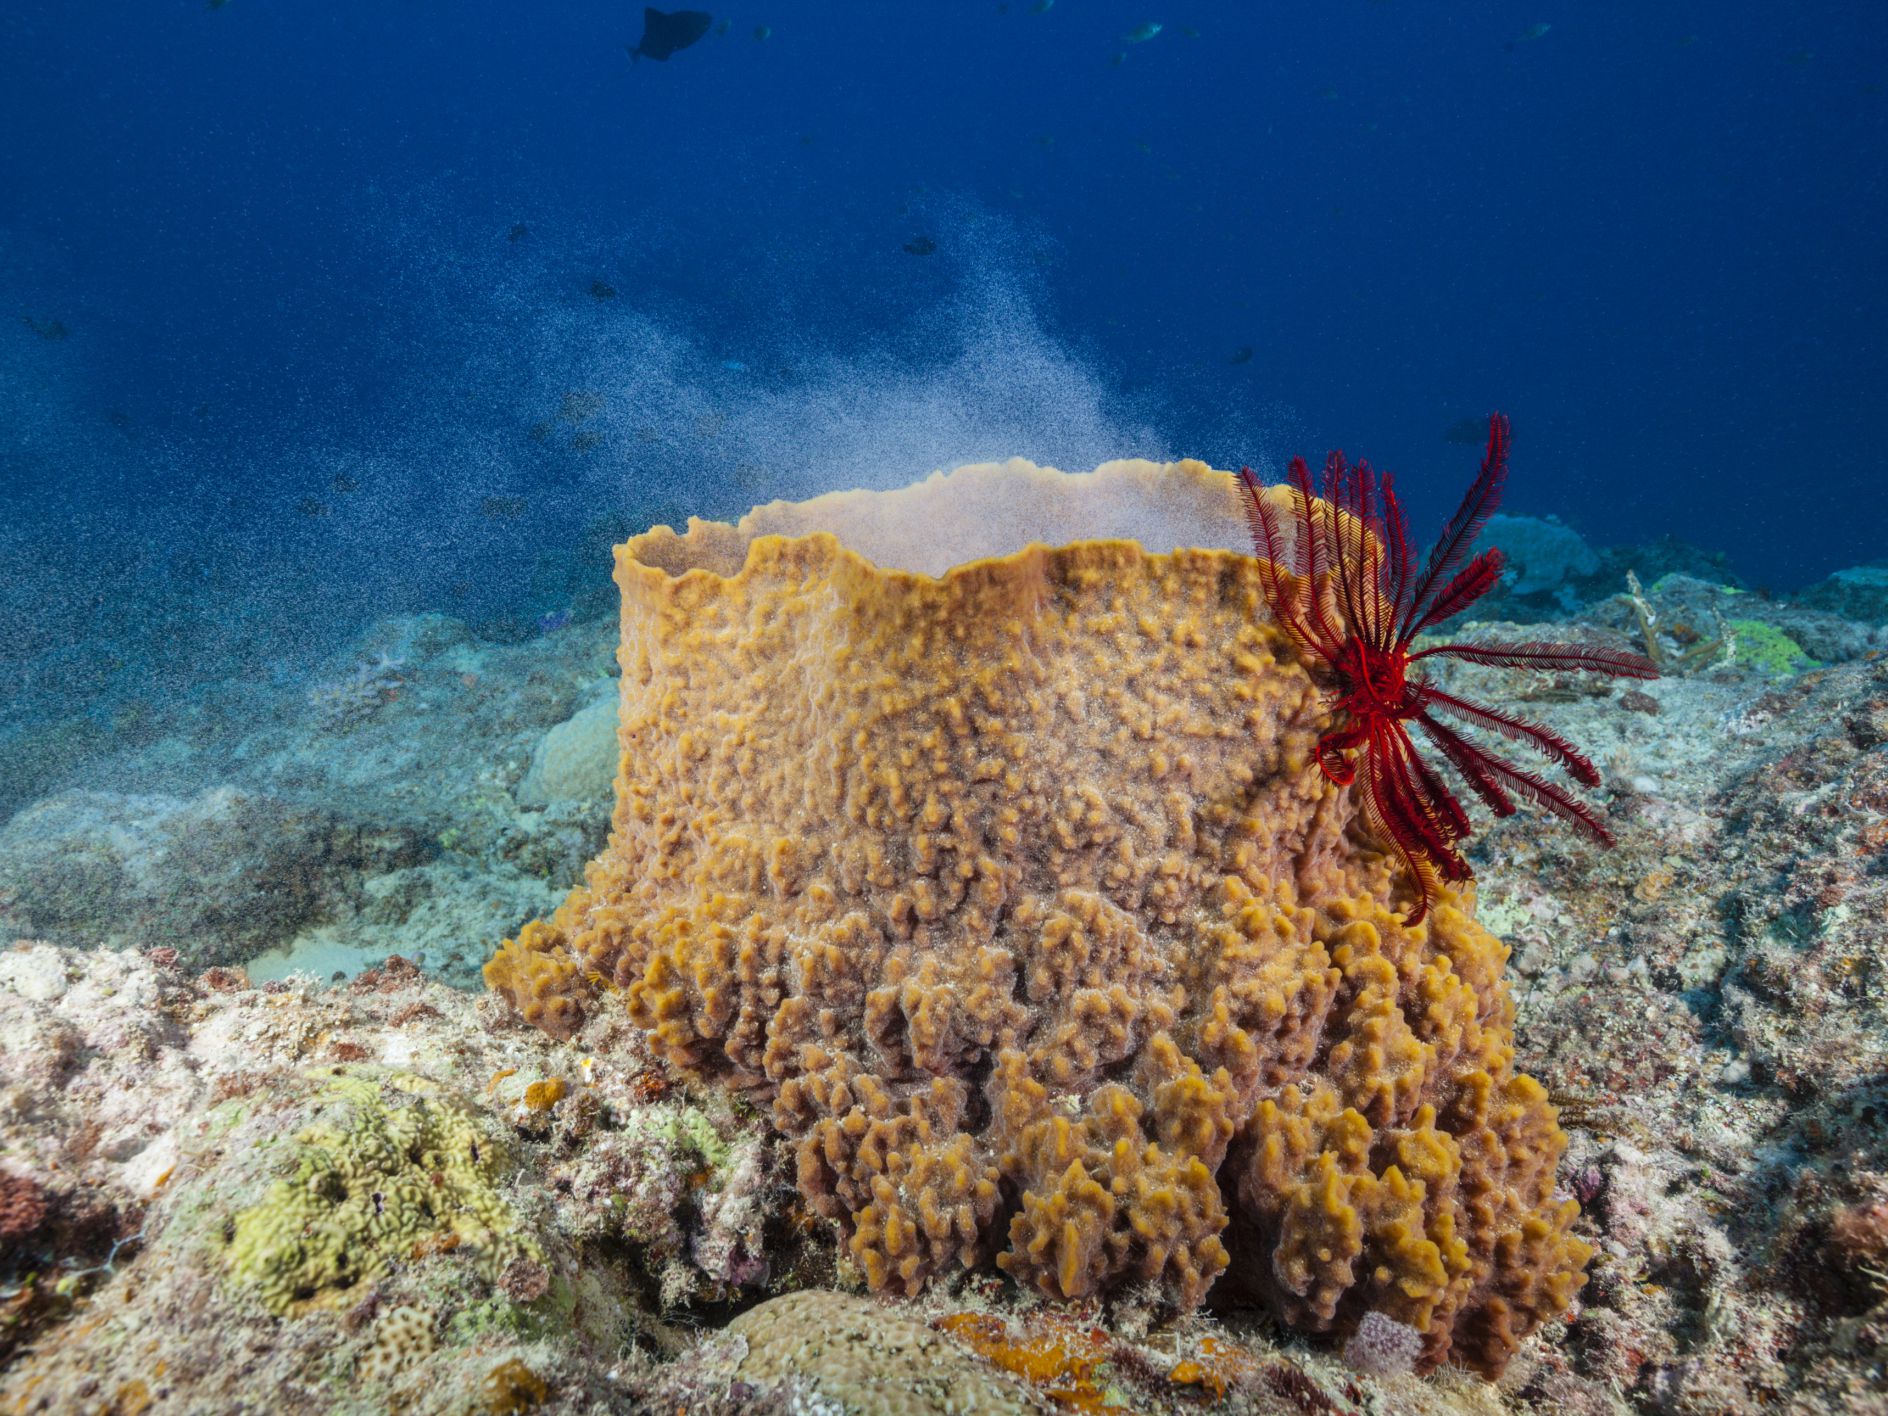 Where do sea sponges grow?